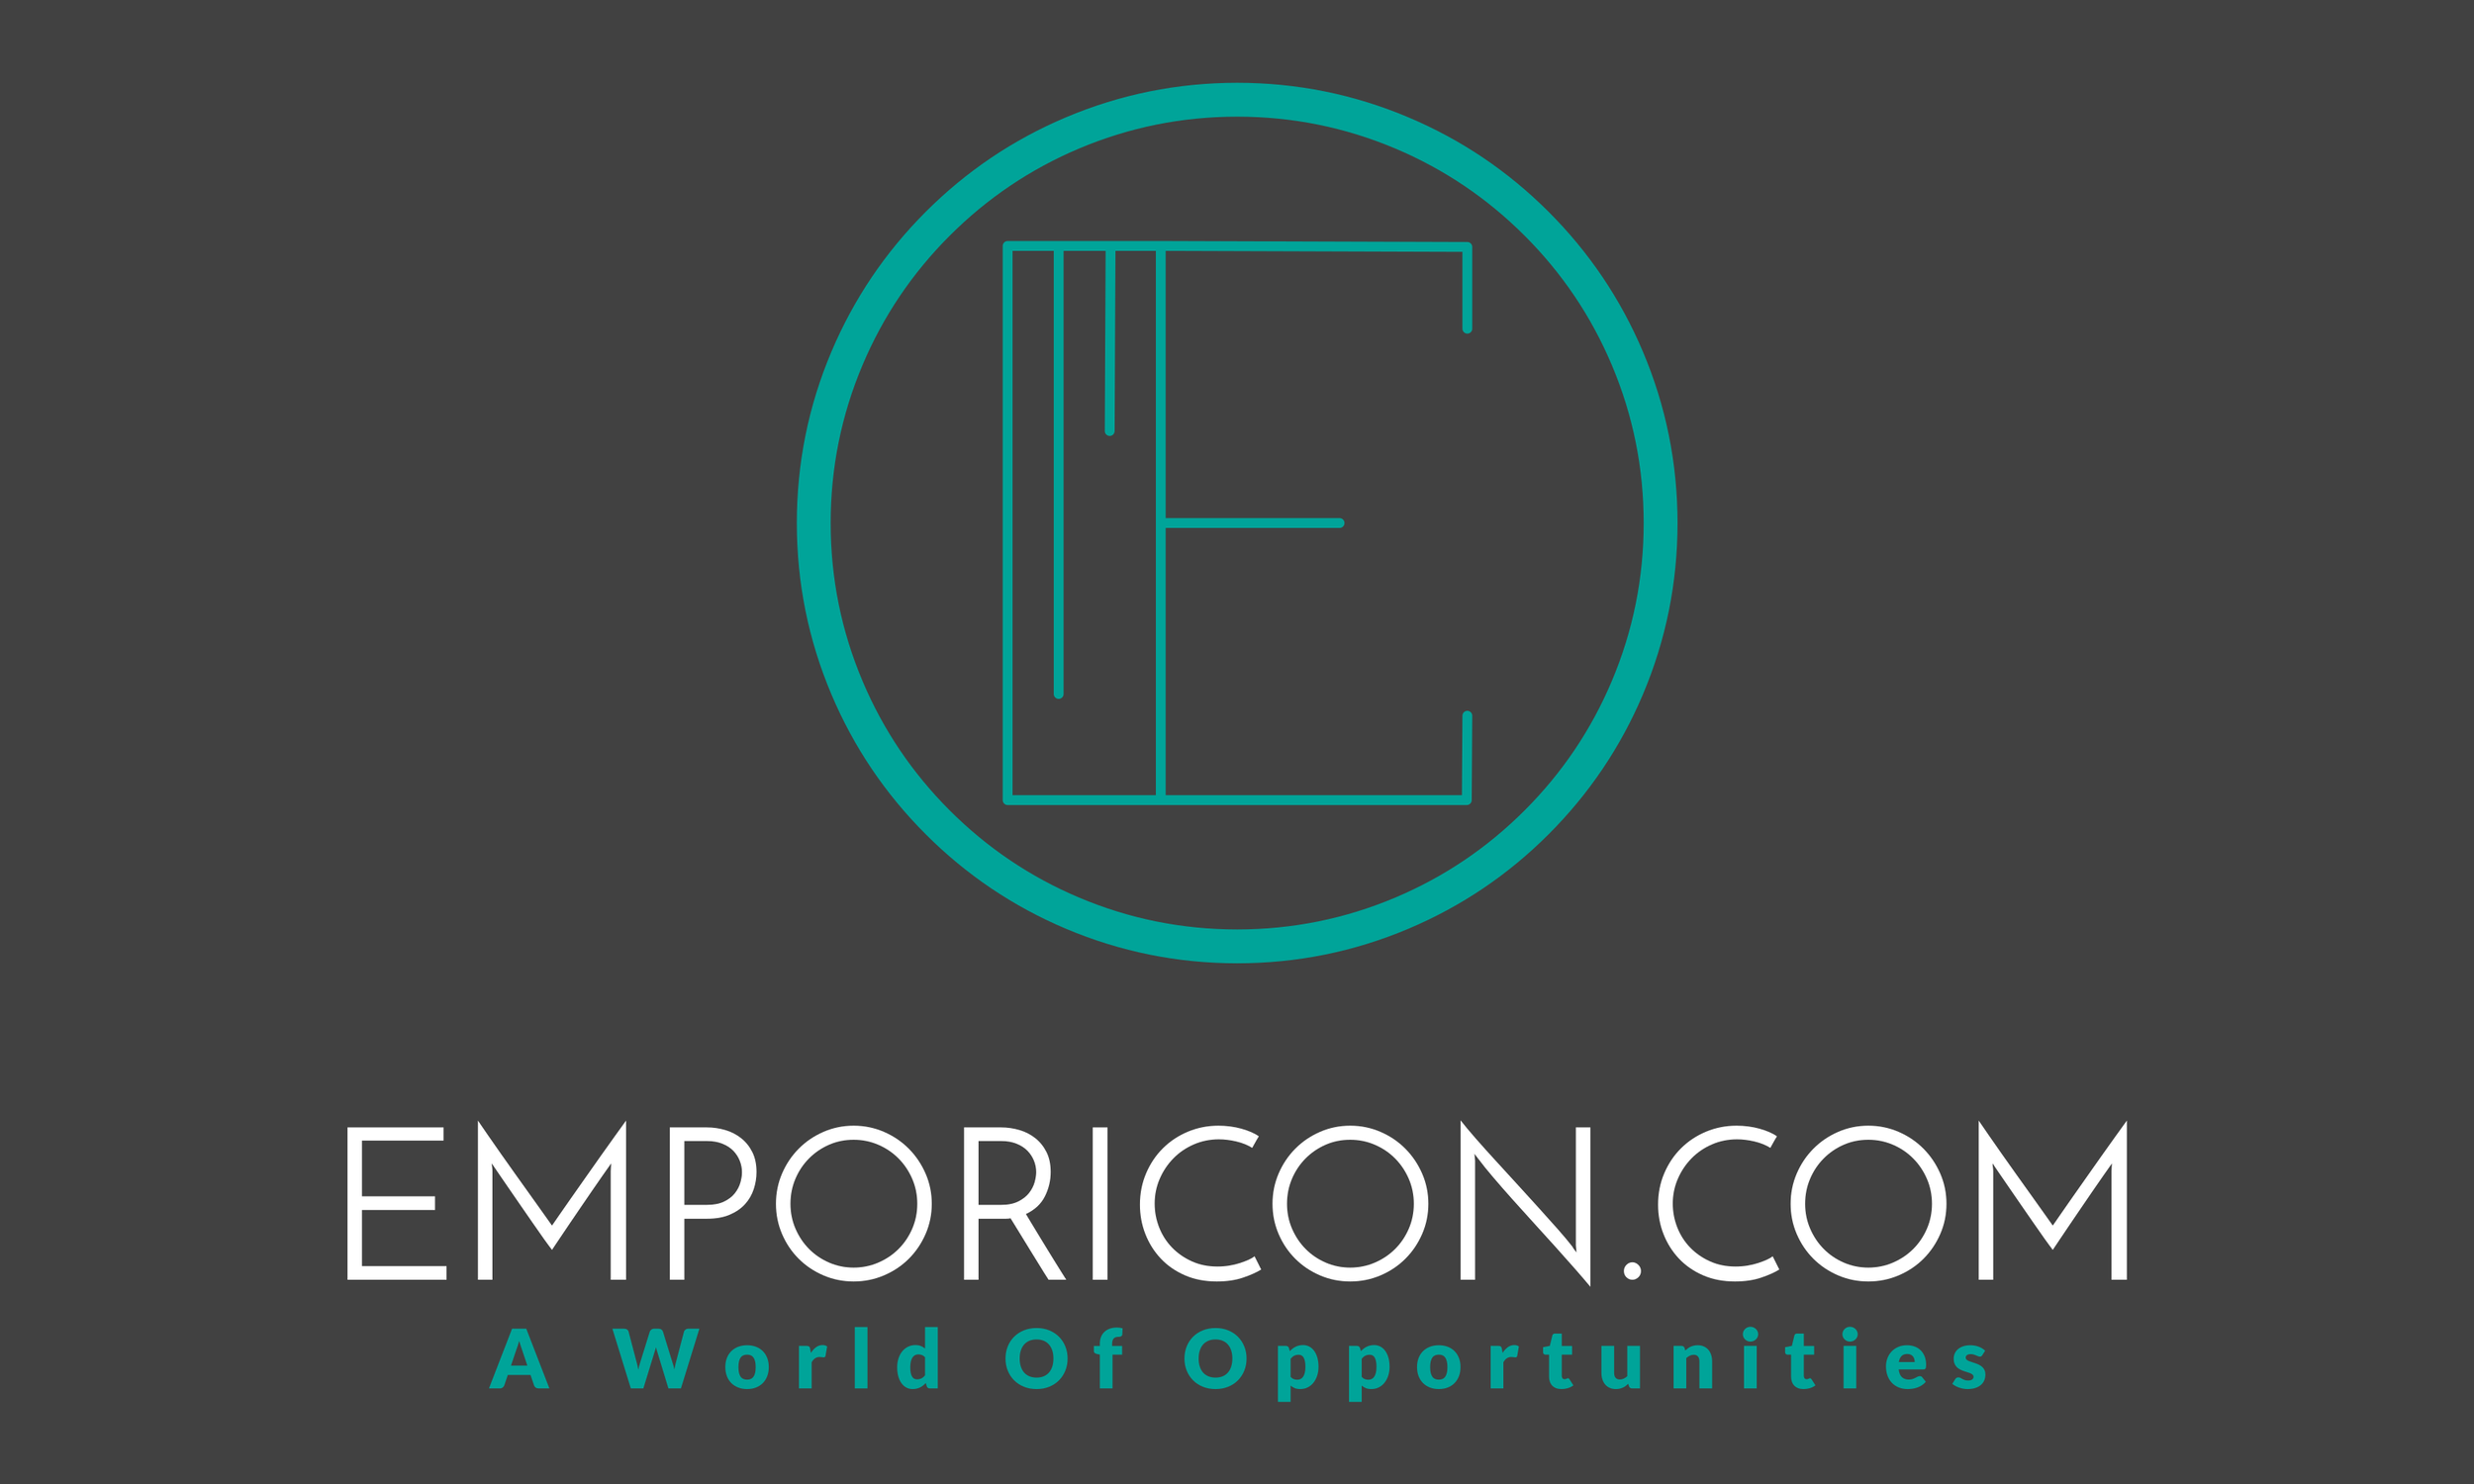 Emporicon.com